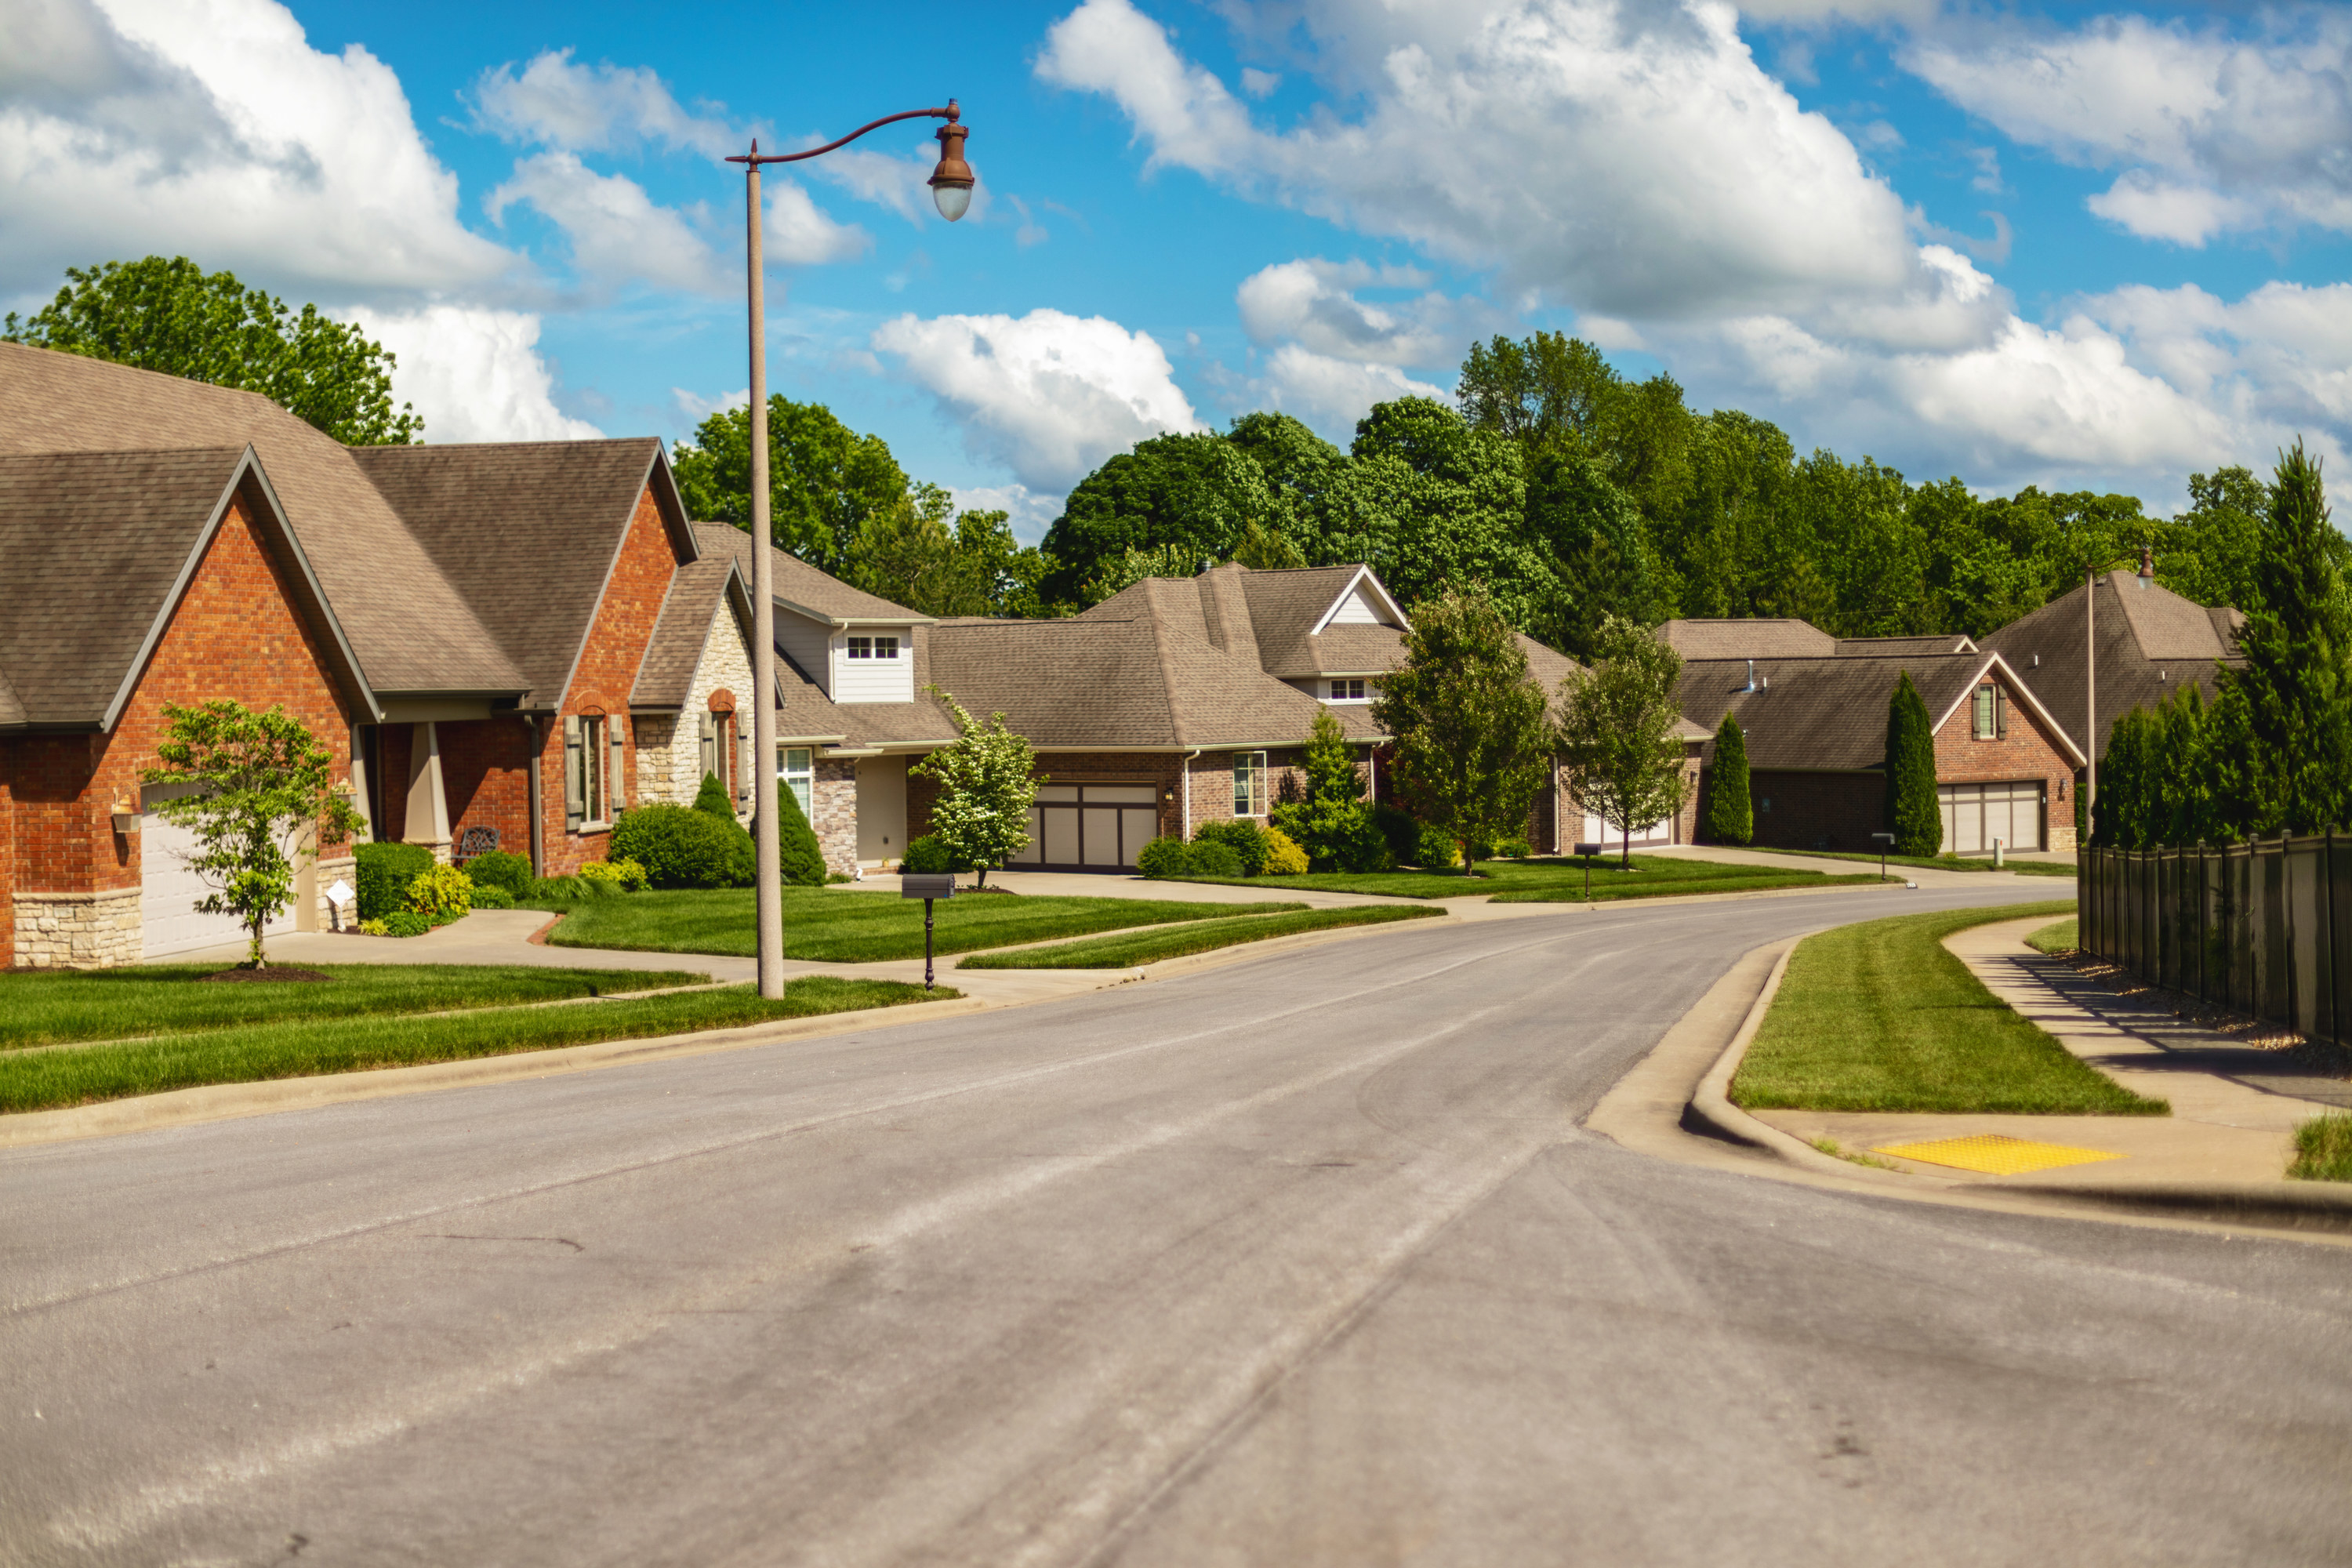 Missouri houses on residential street